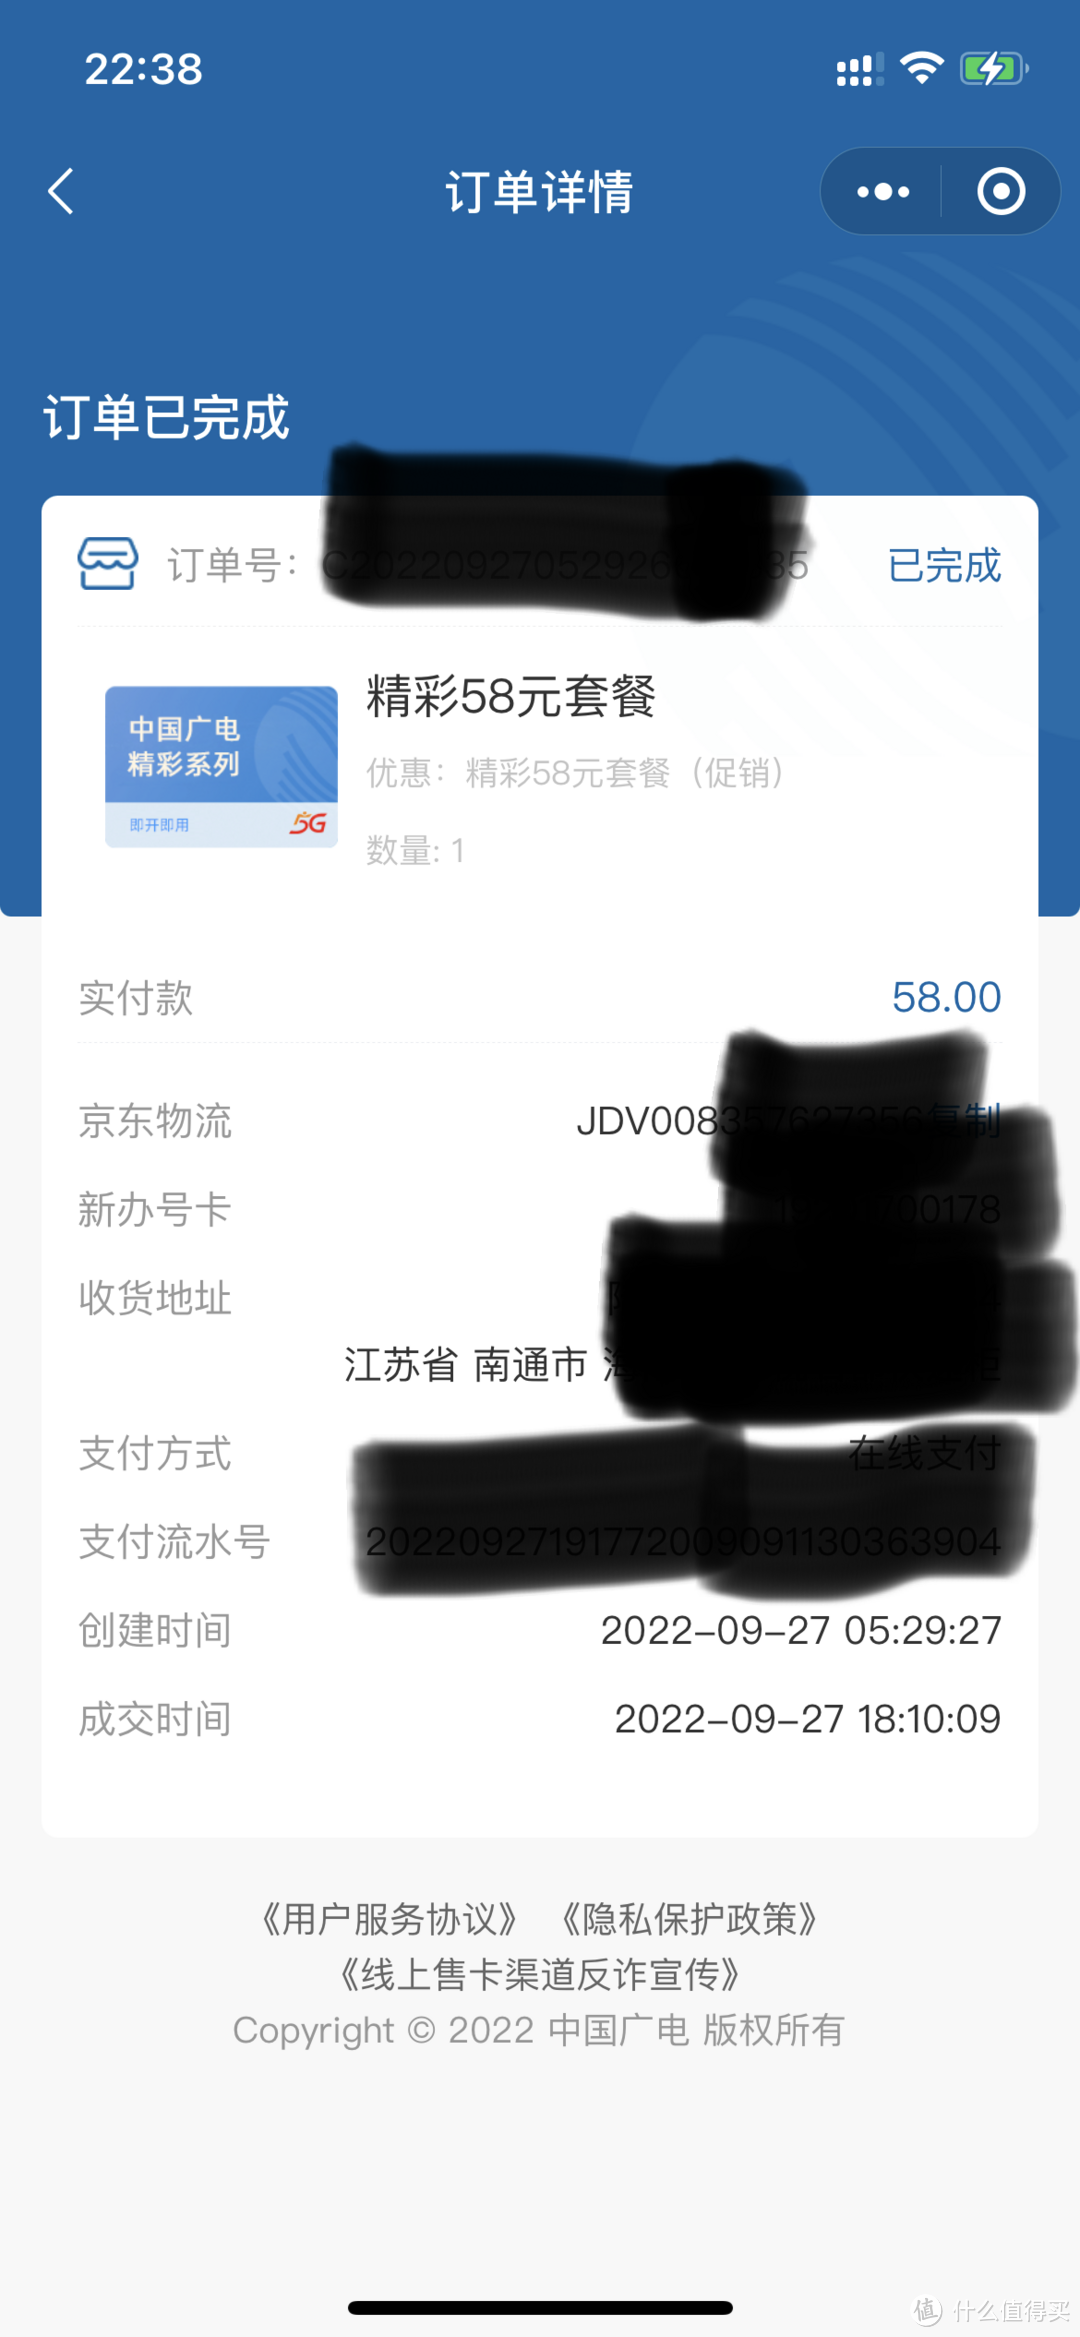 一次盲盒式的购入中国广电手机卡的简单测评（一）